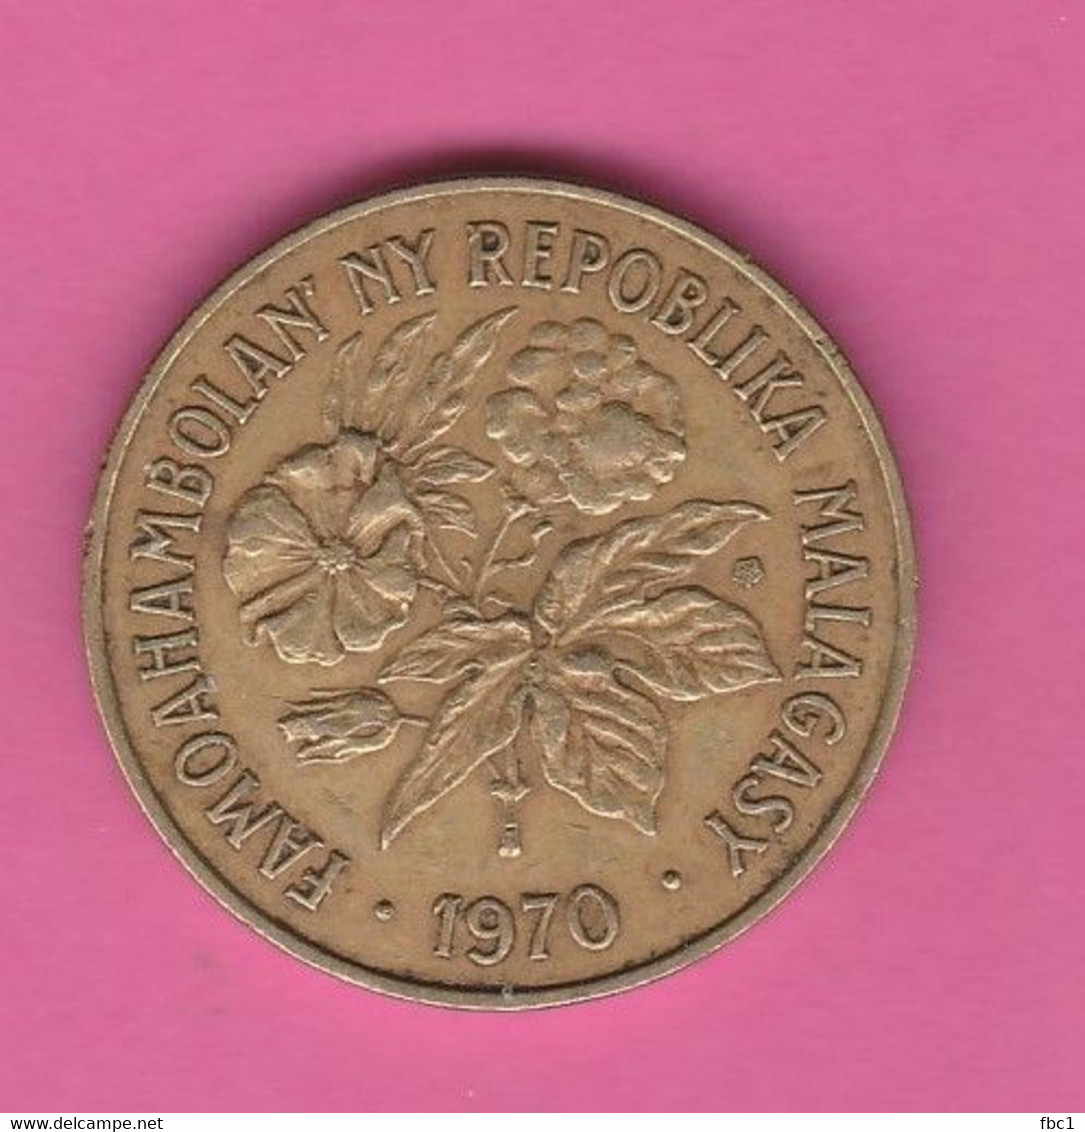 Madagascar - 20 Francs - 1970 - Madagaskar